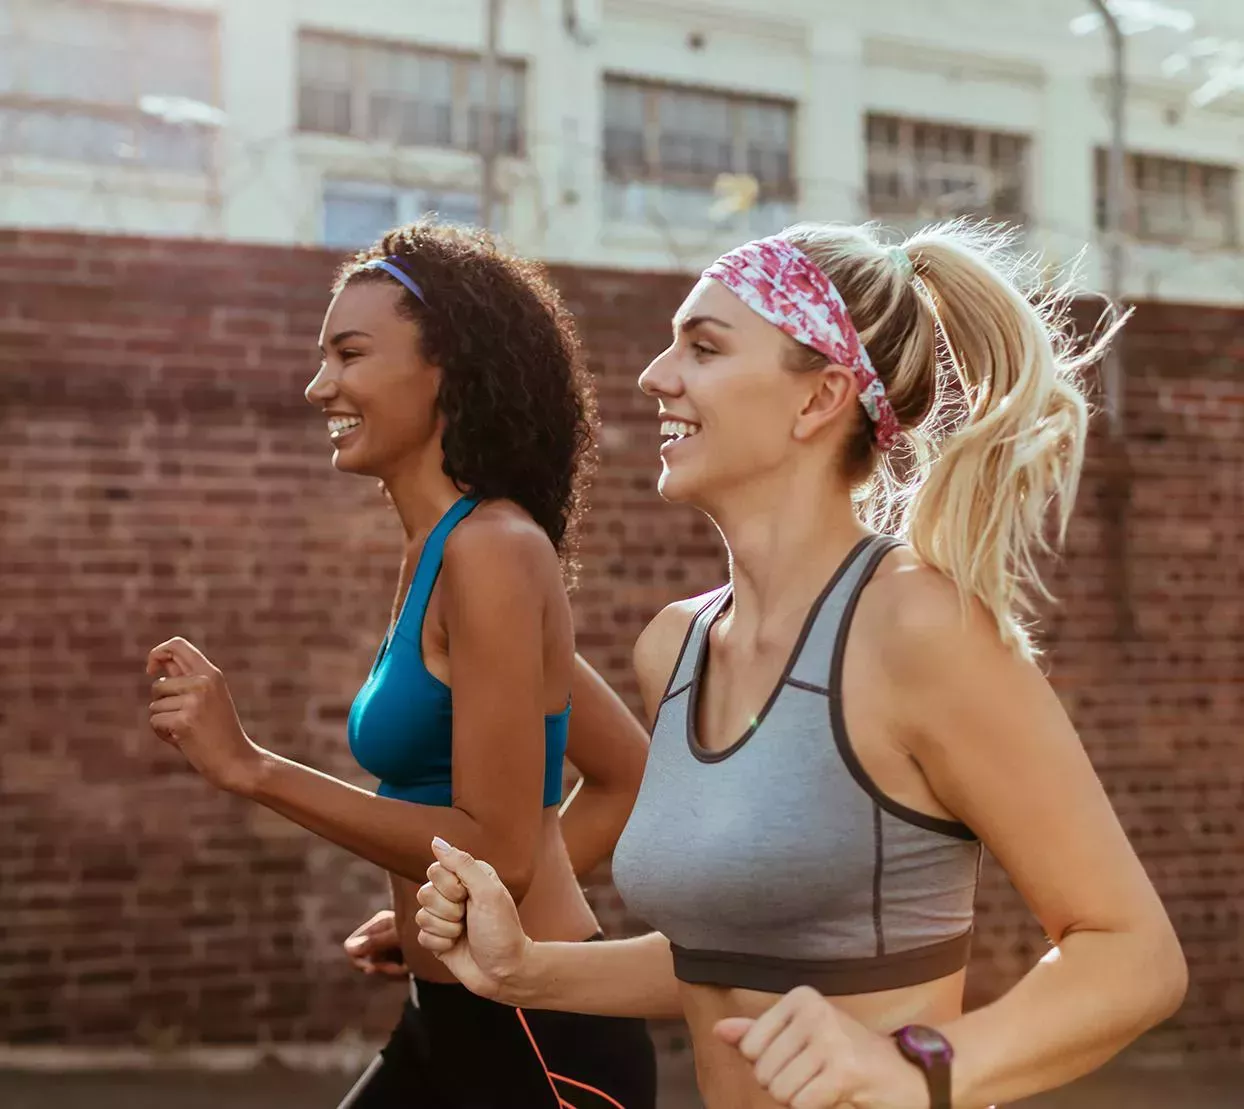 12 beneficios de correr que te hacen más sano (y feliz)